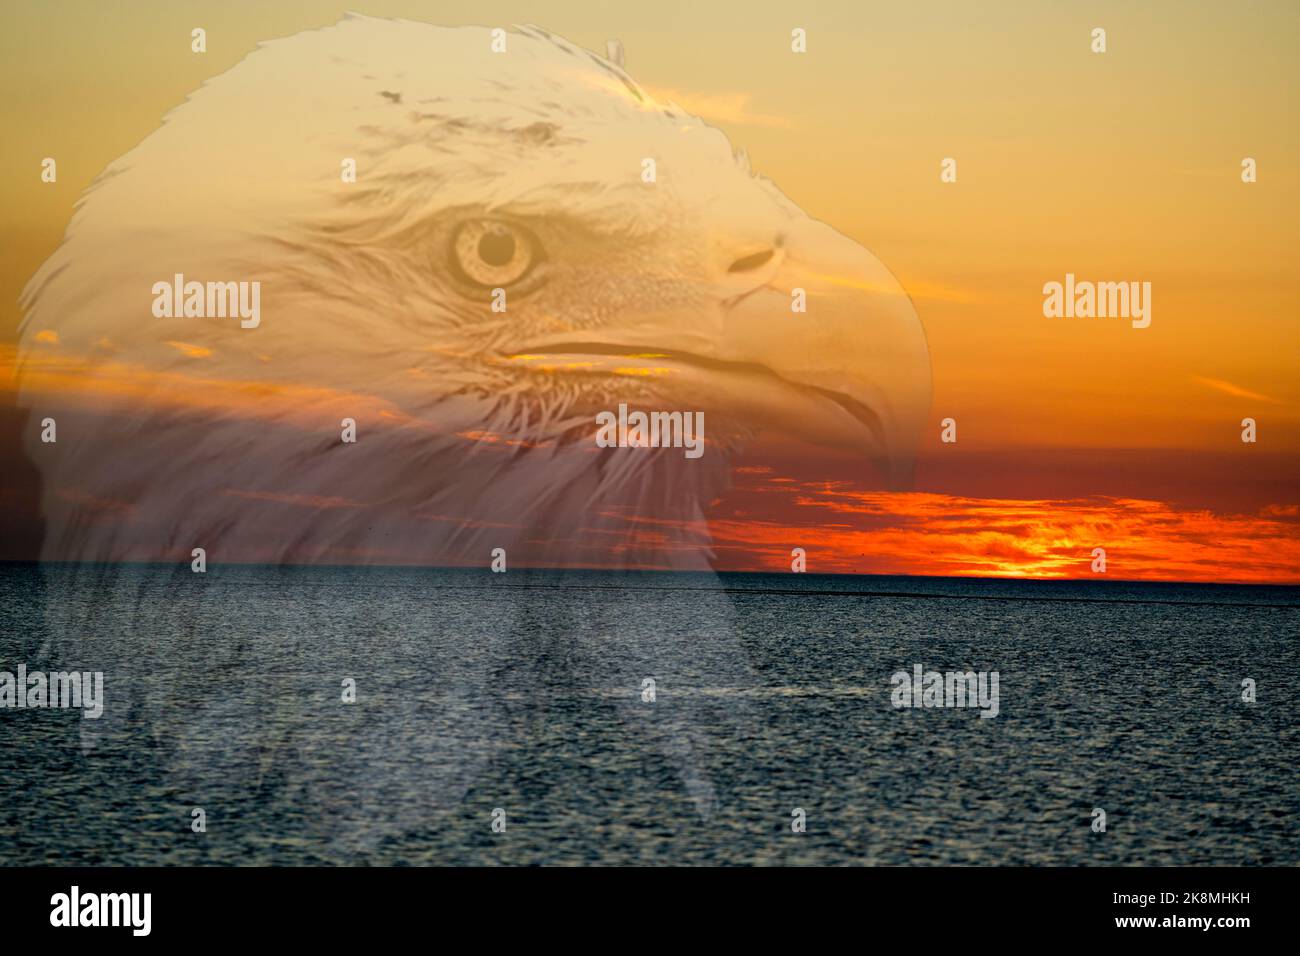 Imágenes prediseñadas de águila fotografías e imágenes de alta resolución -  Alamy